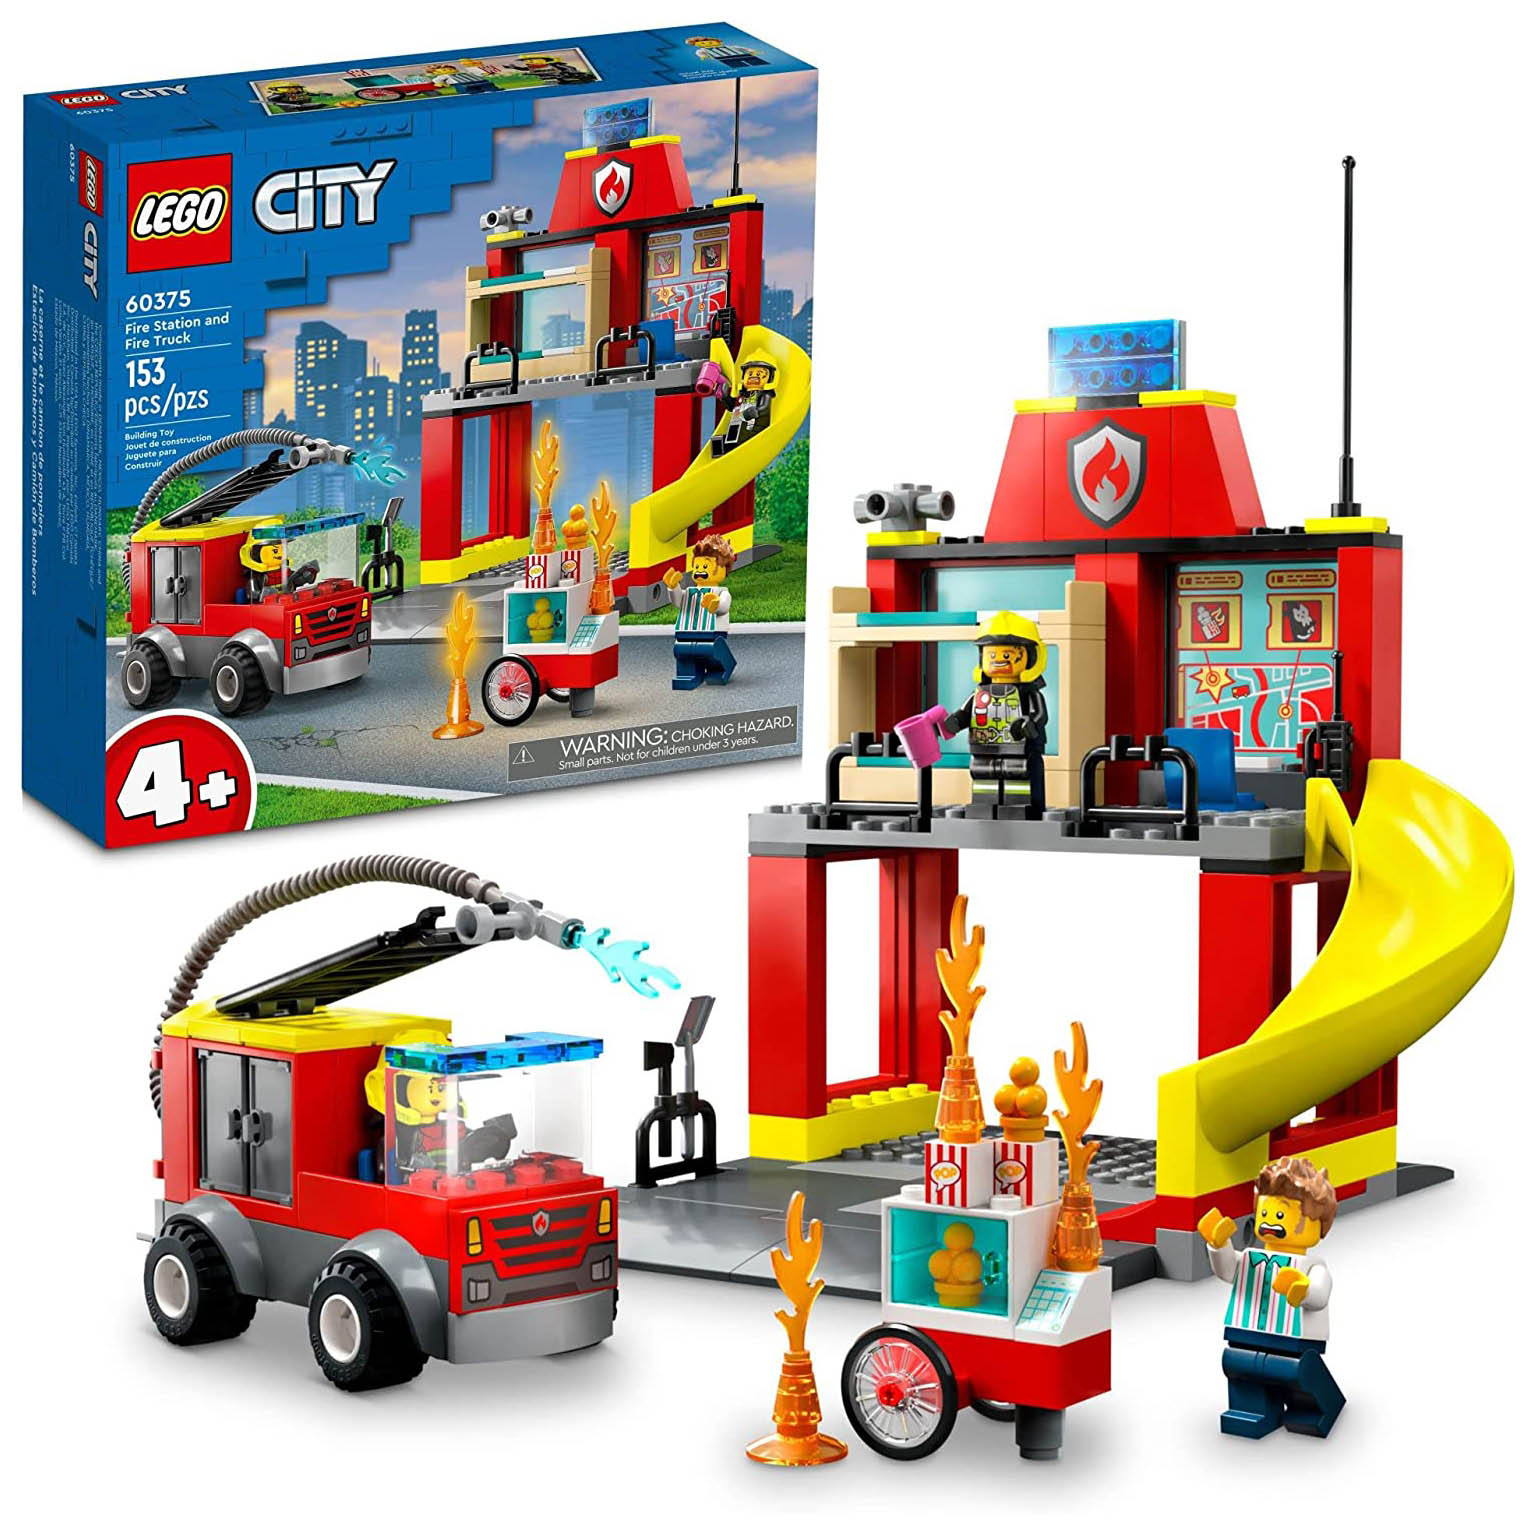 Конструктор LEGO City  Пожарная часть и пожарная машина, 153 детали, 60375 конструктор машина vip travel со свет звук эффектами в коробке 1368